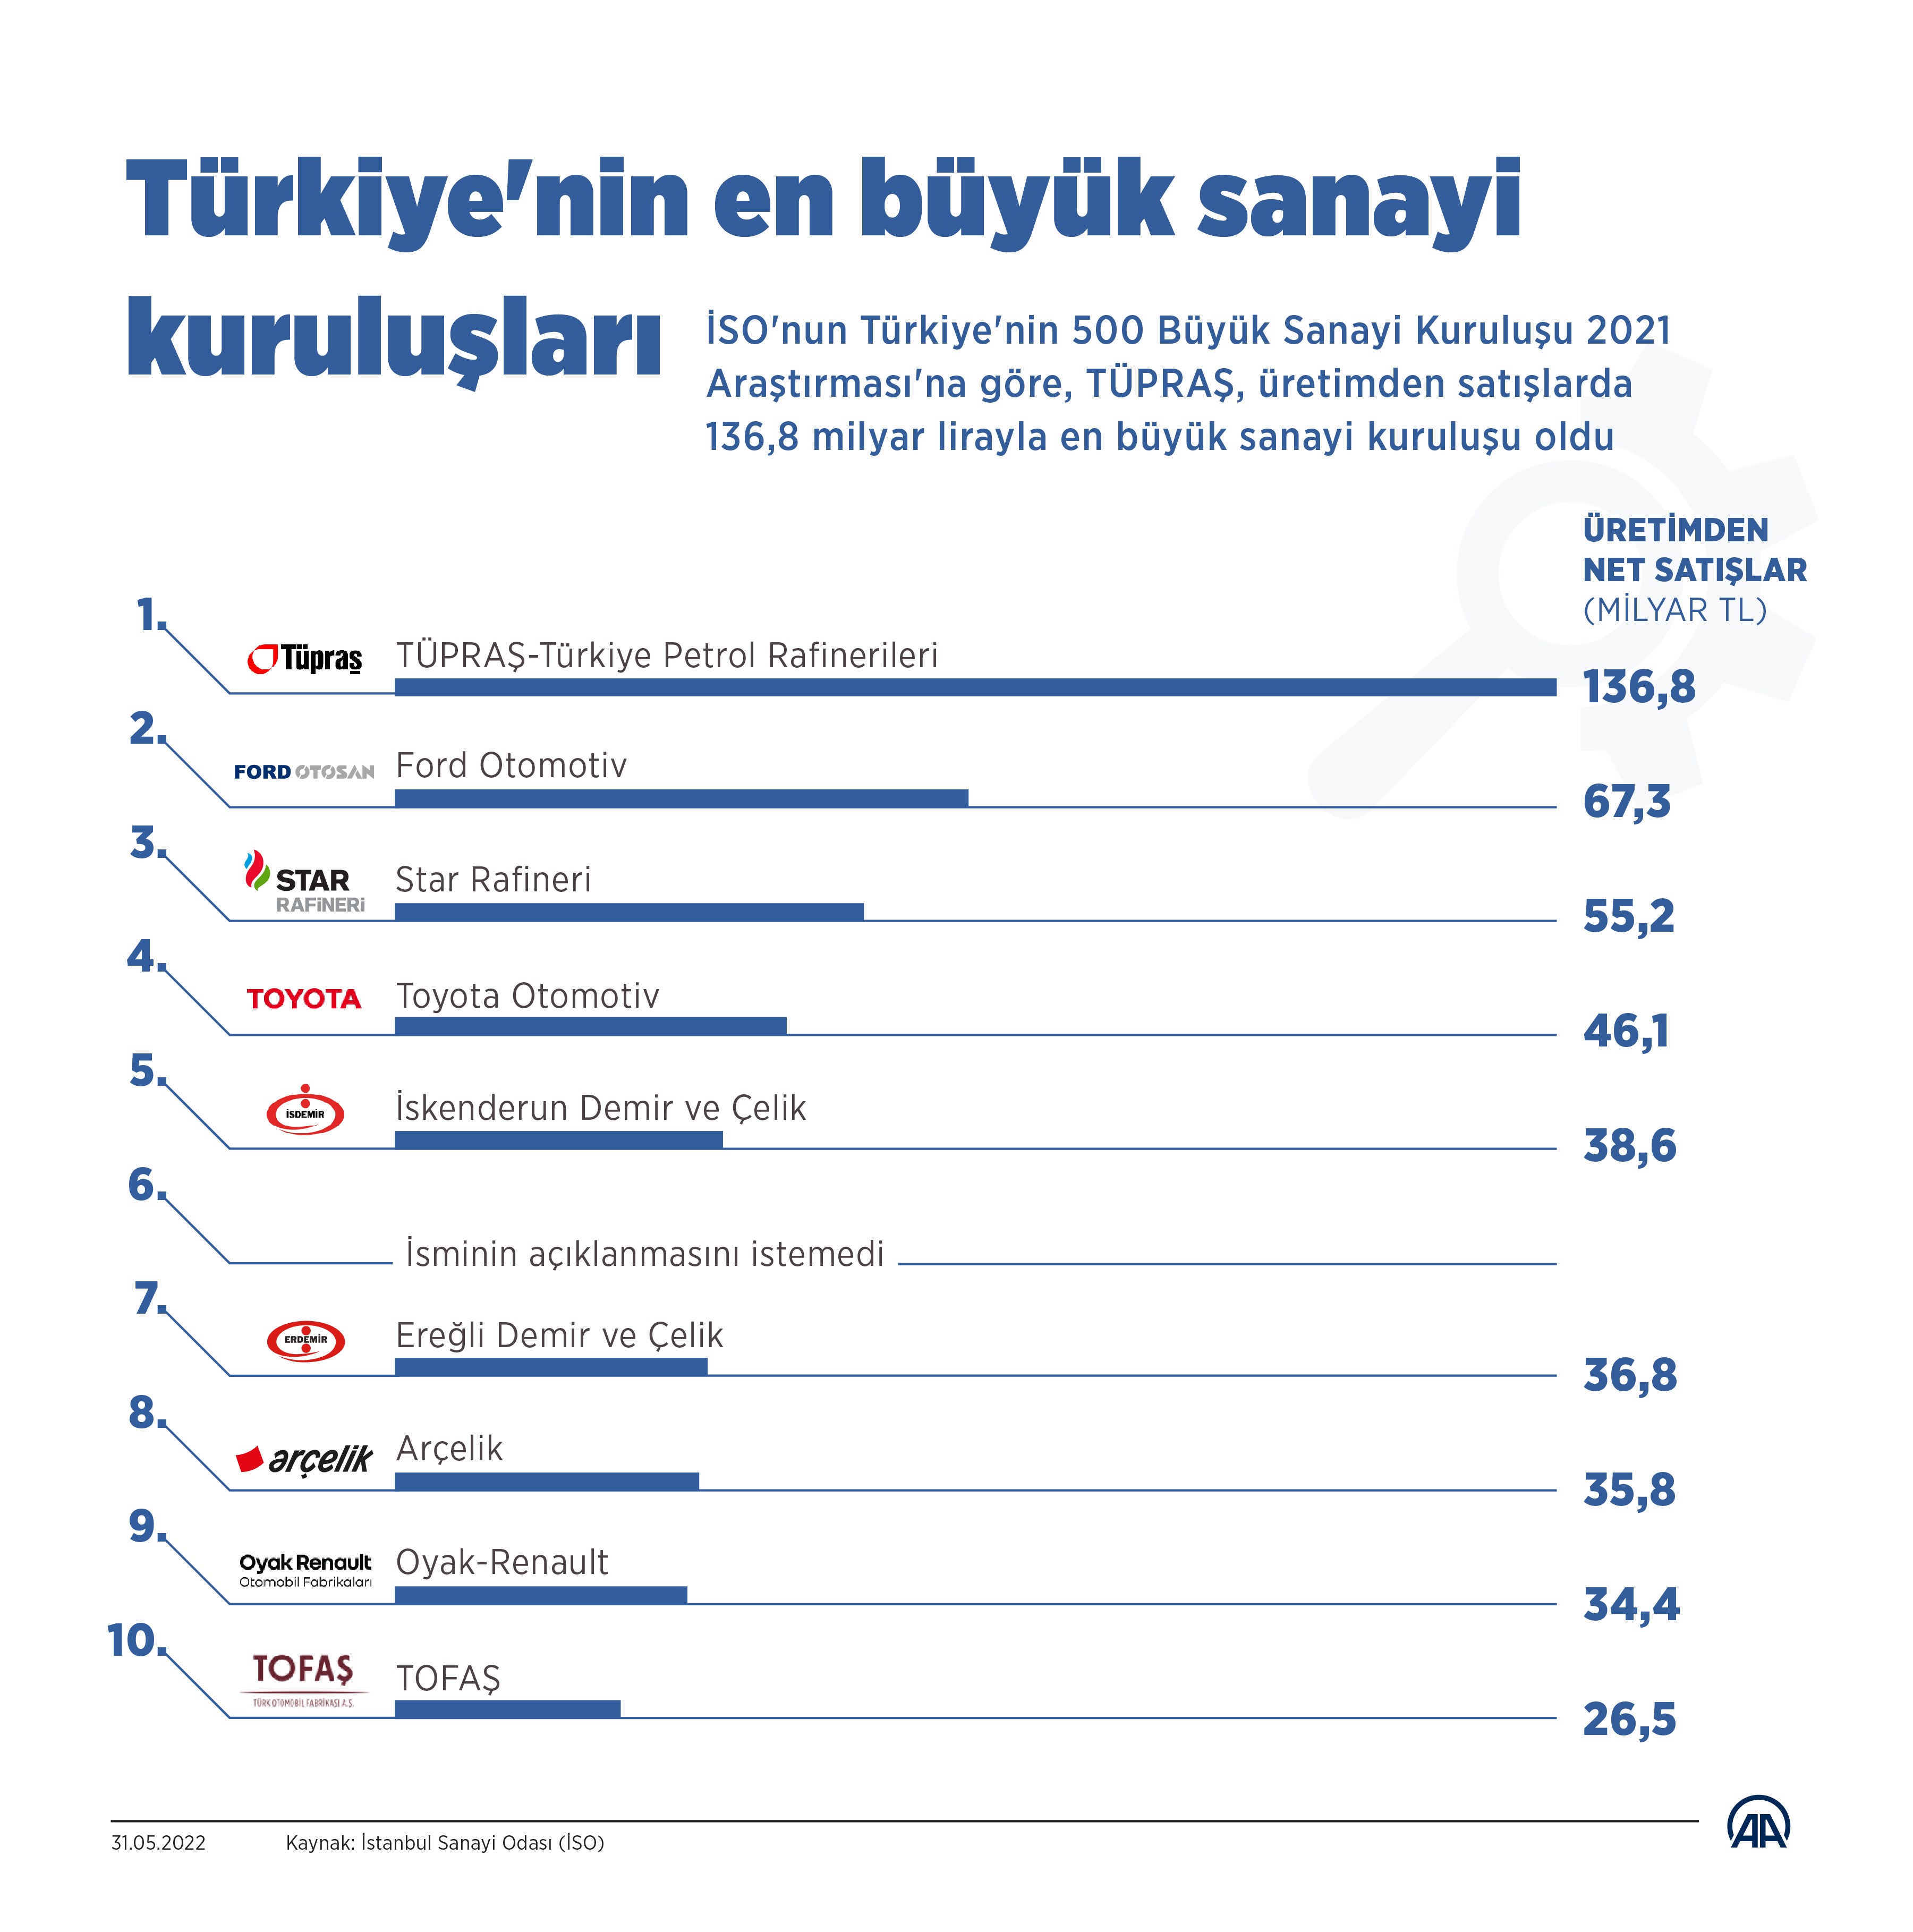 Türkiye’nin 500 Büyük Sanayi Kuruluşu 2021 araştırması yayınlandı